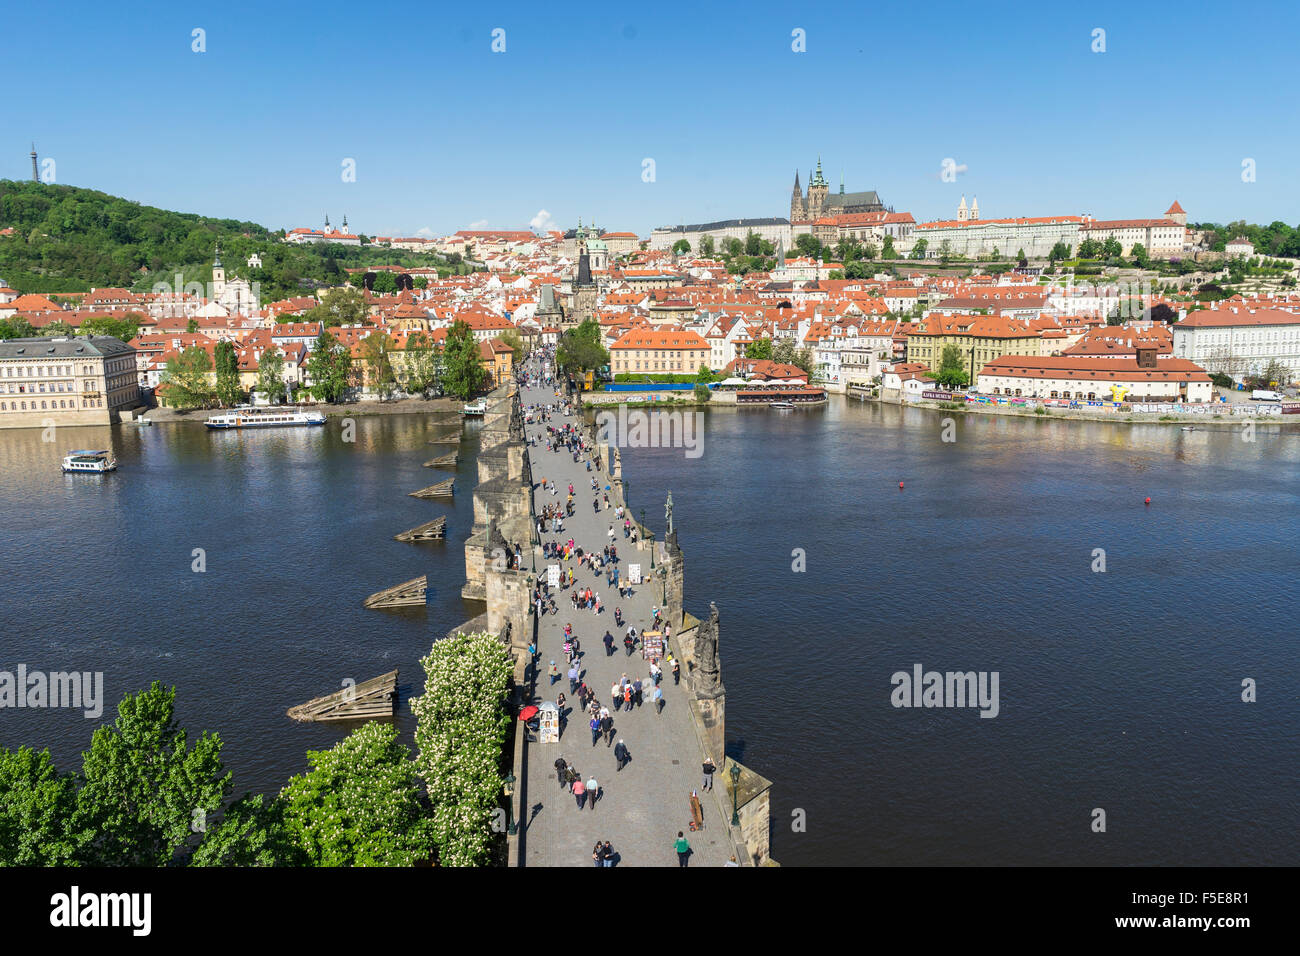 Le pont Charles à la recherche vers le quartier du Château Royal, Palance et la cathédrale Saint-Guy, l'UNESCO, Prague, République Tchèque Banque D'Images